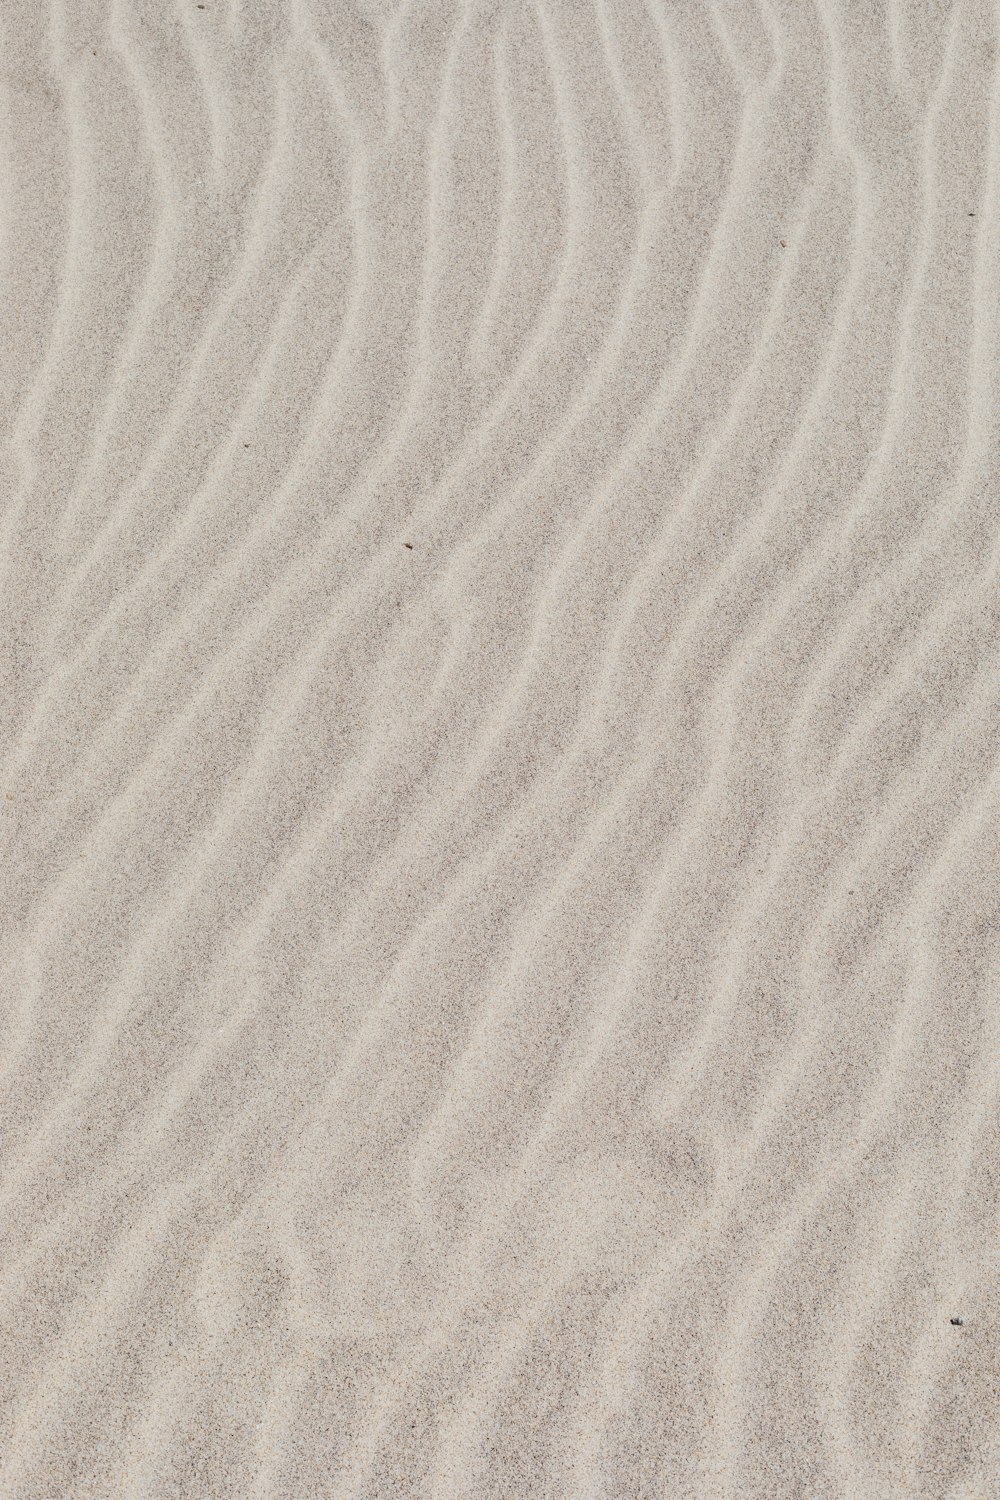 arena blanca con sombra de persona